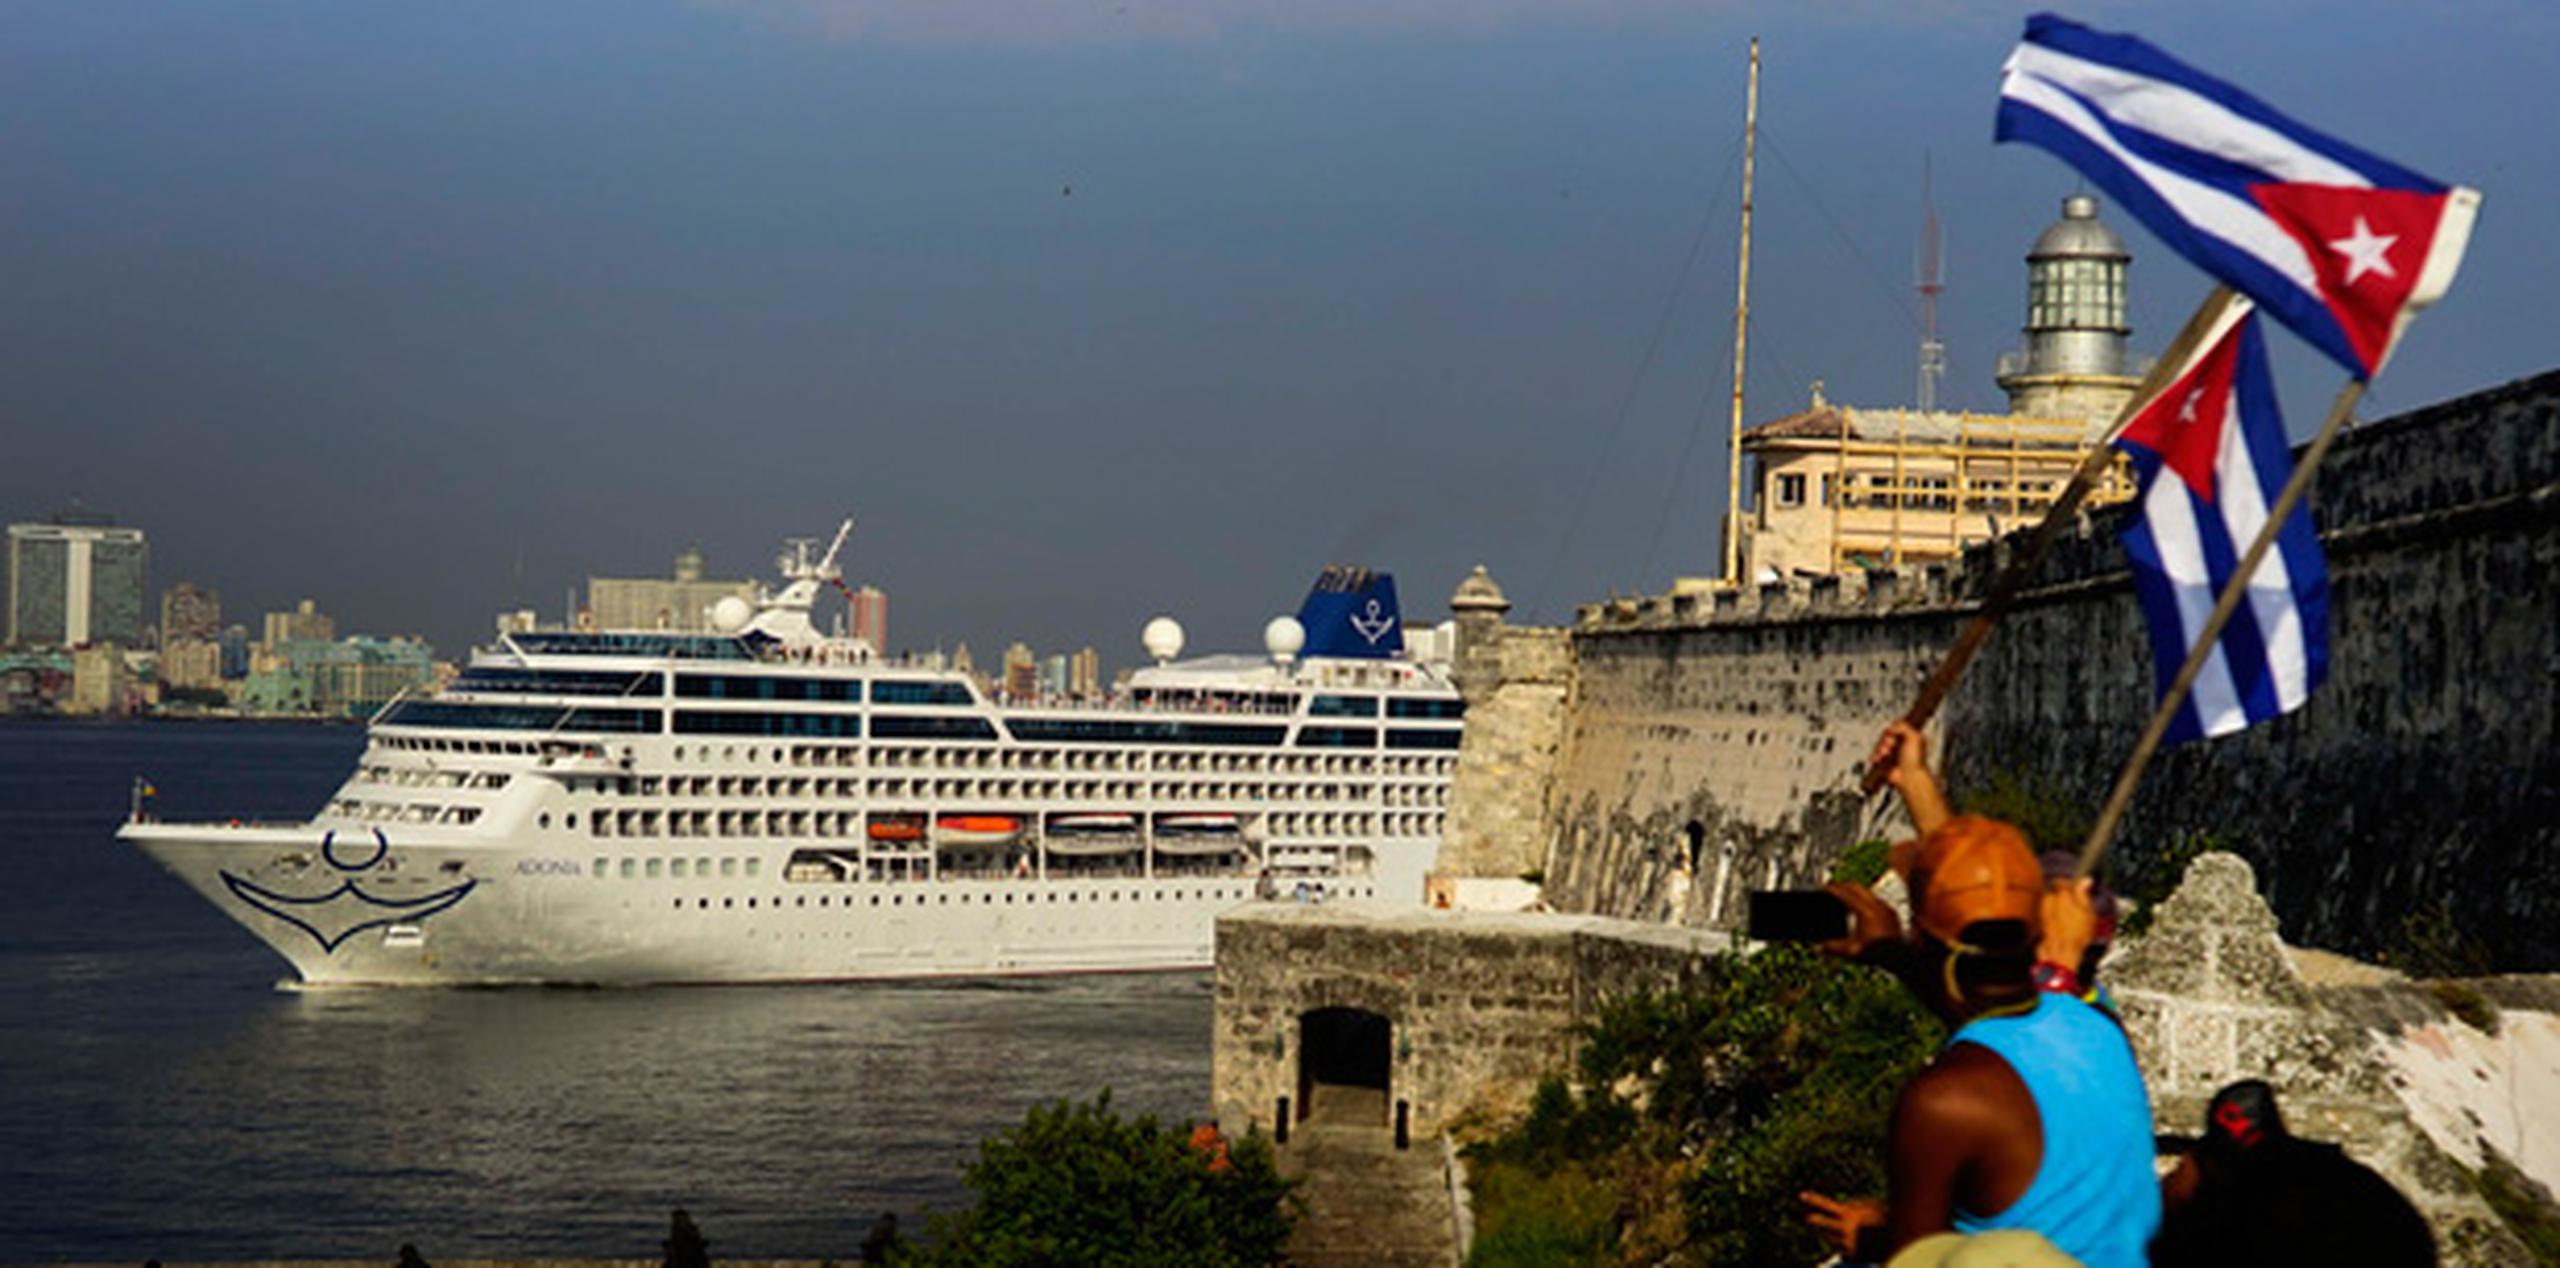 El buque Adonia, de la compañía de cruceros Carnival Corp., zarpó de Miami alrededor de las 4:24 de la tarde con 704 pasajeros con destino a La Habana. (AP)